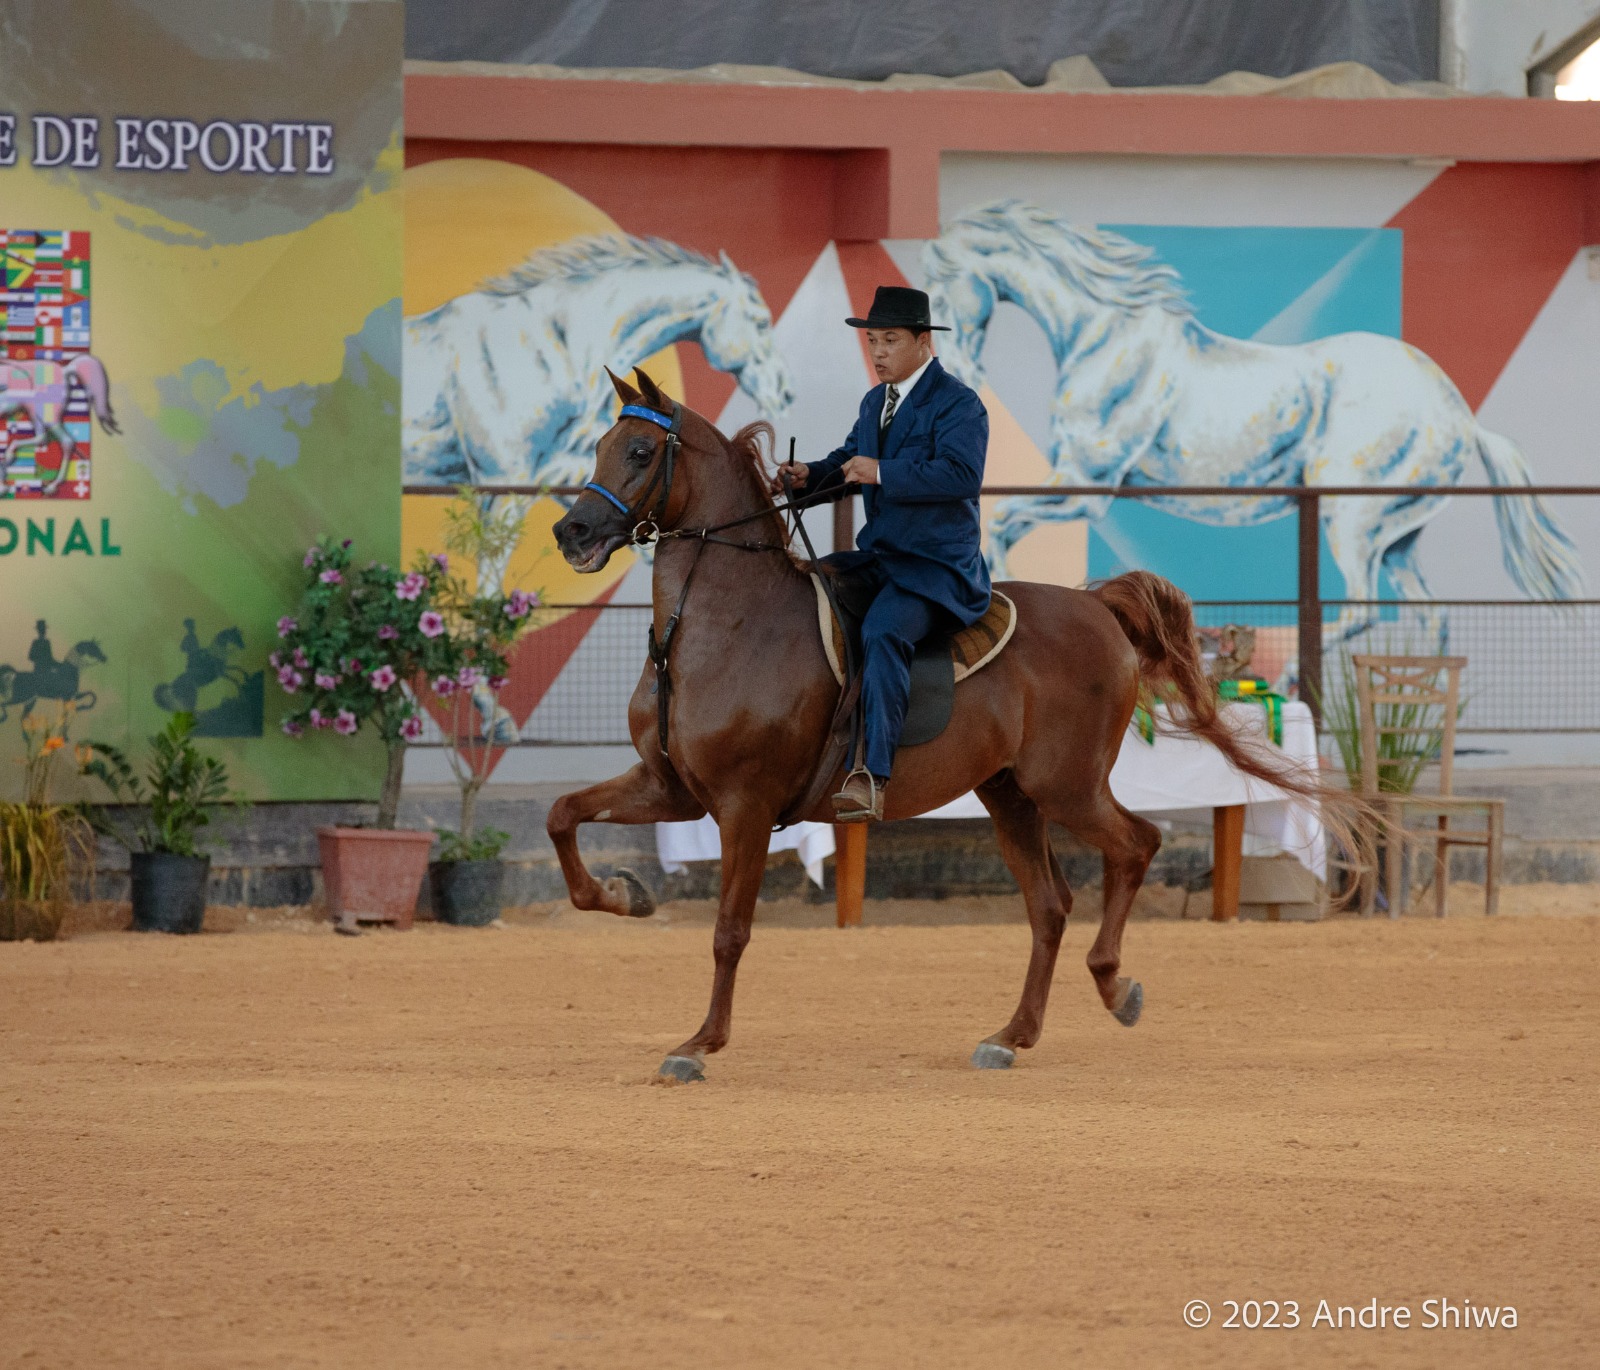 37ª Exposição Interestadual do Cavalo Árabe começa nesta sexta-feira (15) na cidade de Tatuí (SP)